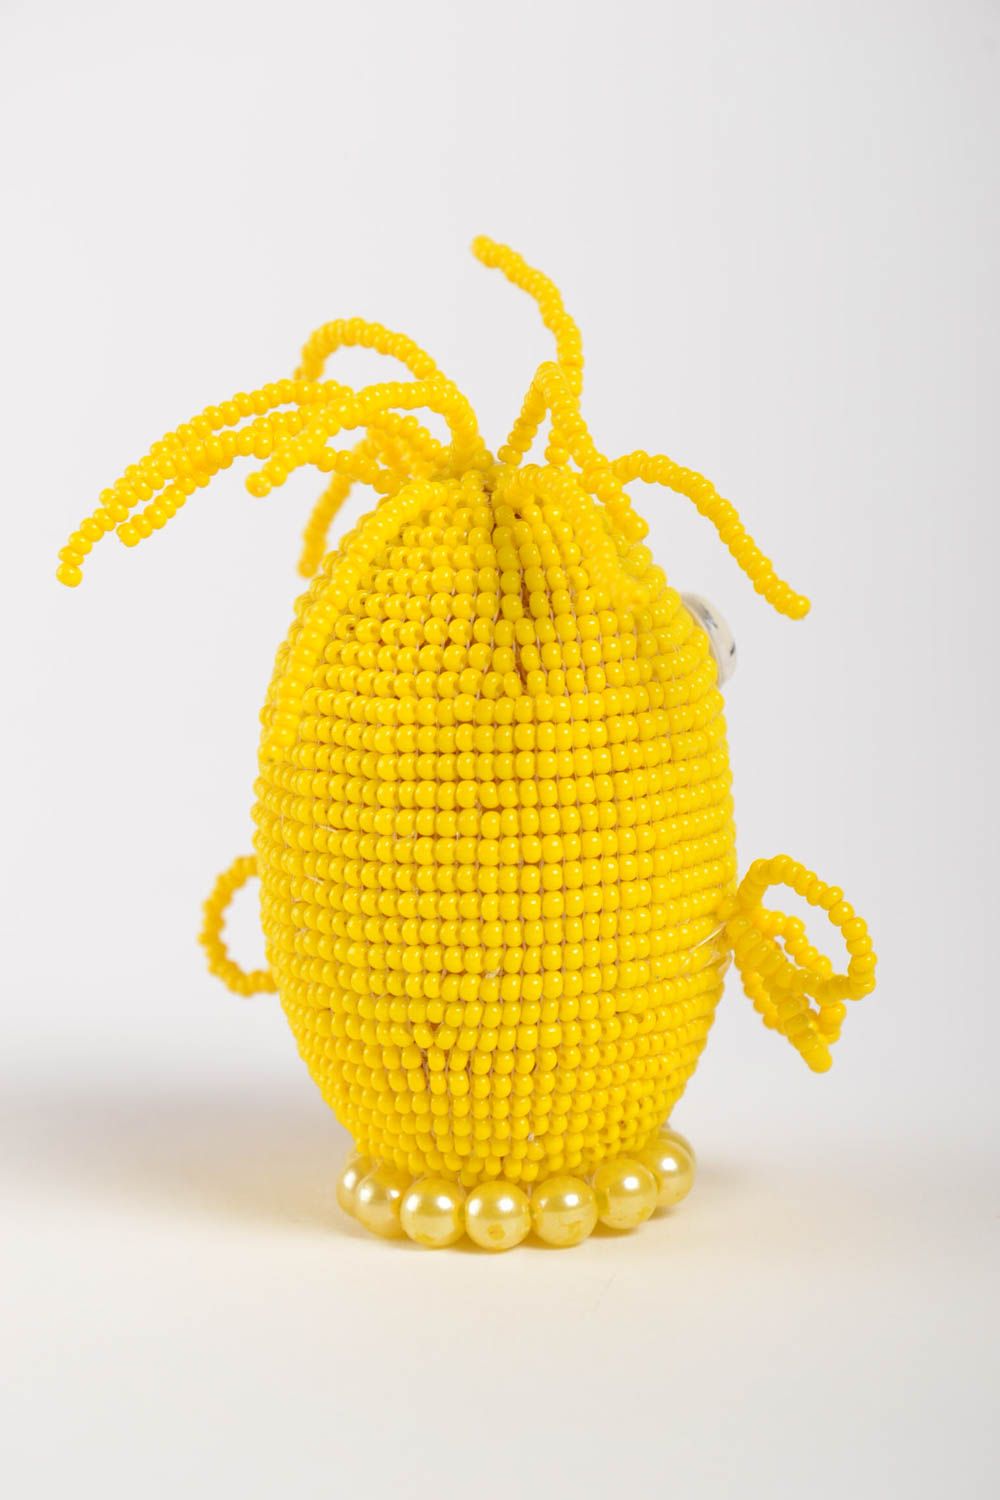 Декоративное яйцо из бисера в виде цыпленка желтое яркое небольшое ручной работы фото 3